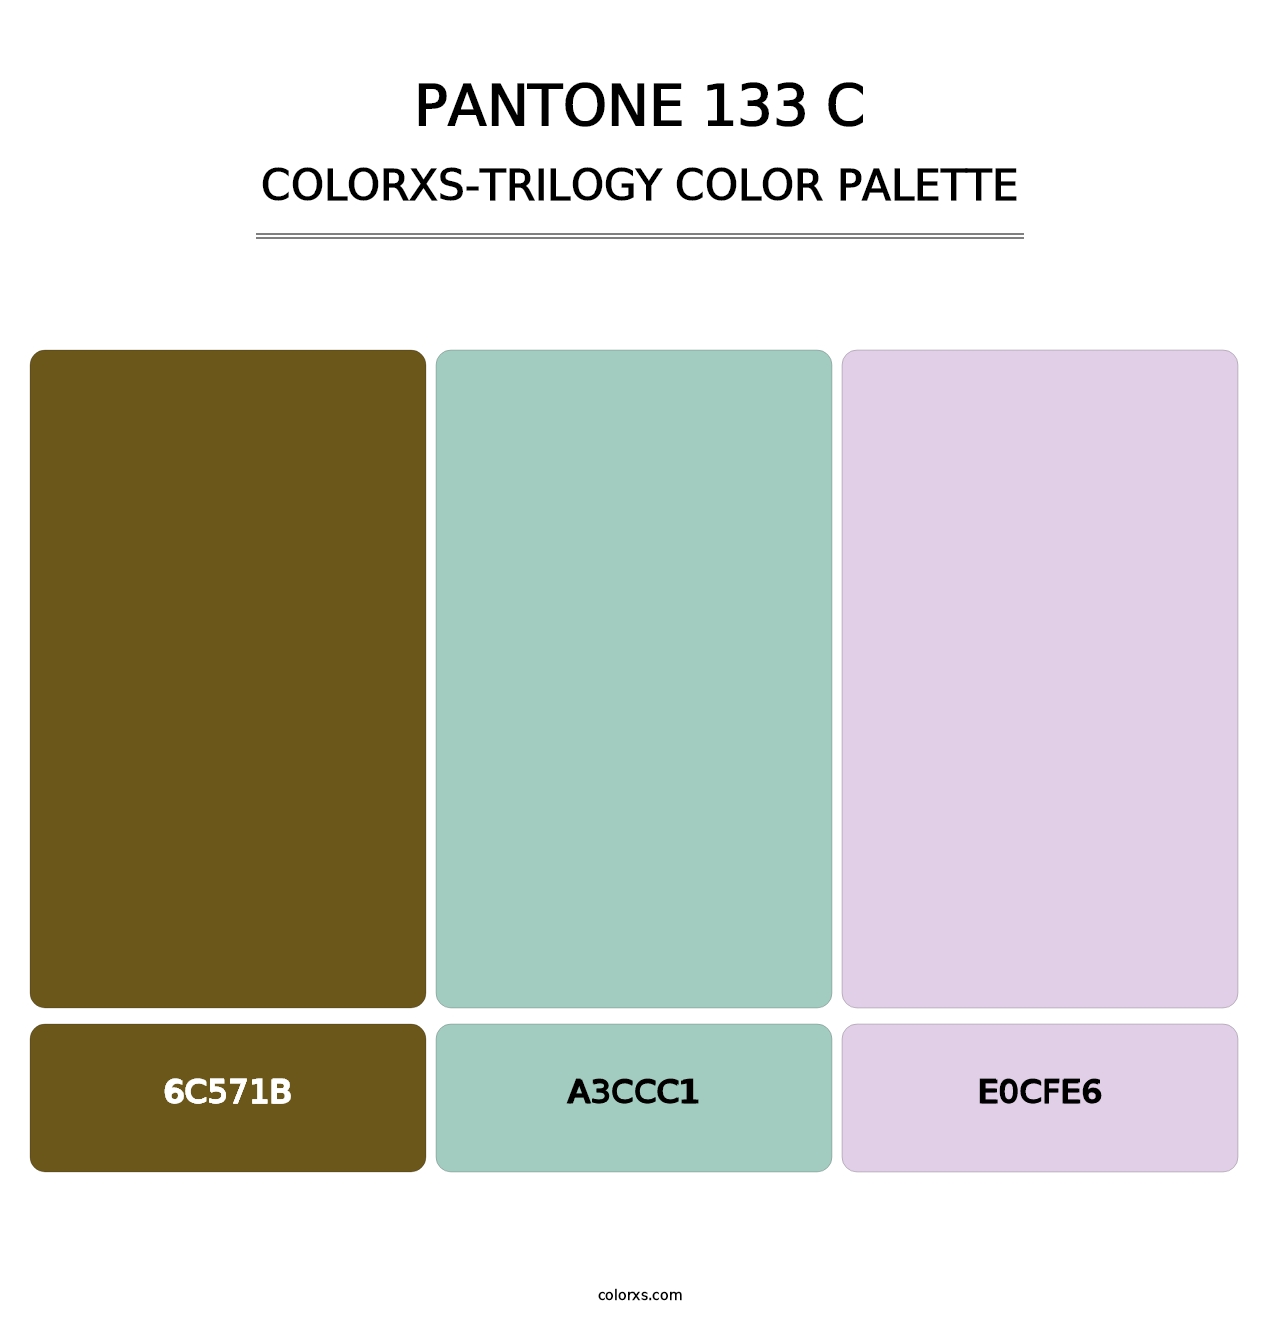 PANTONE 133 C - Colorxs Trilogy Palette